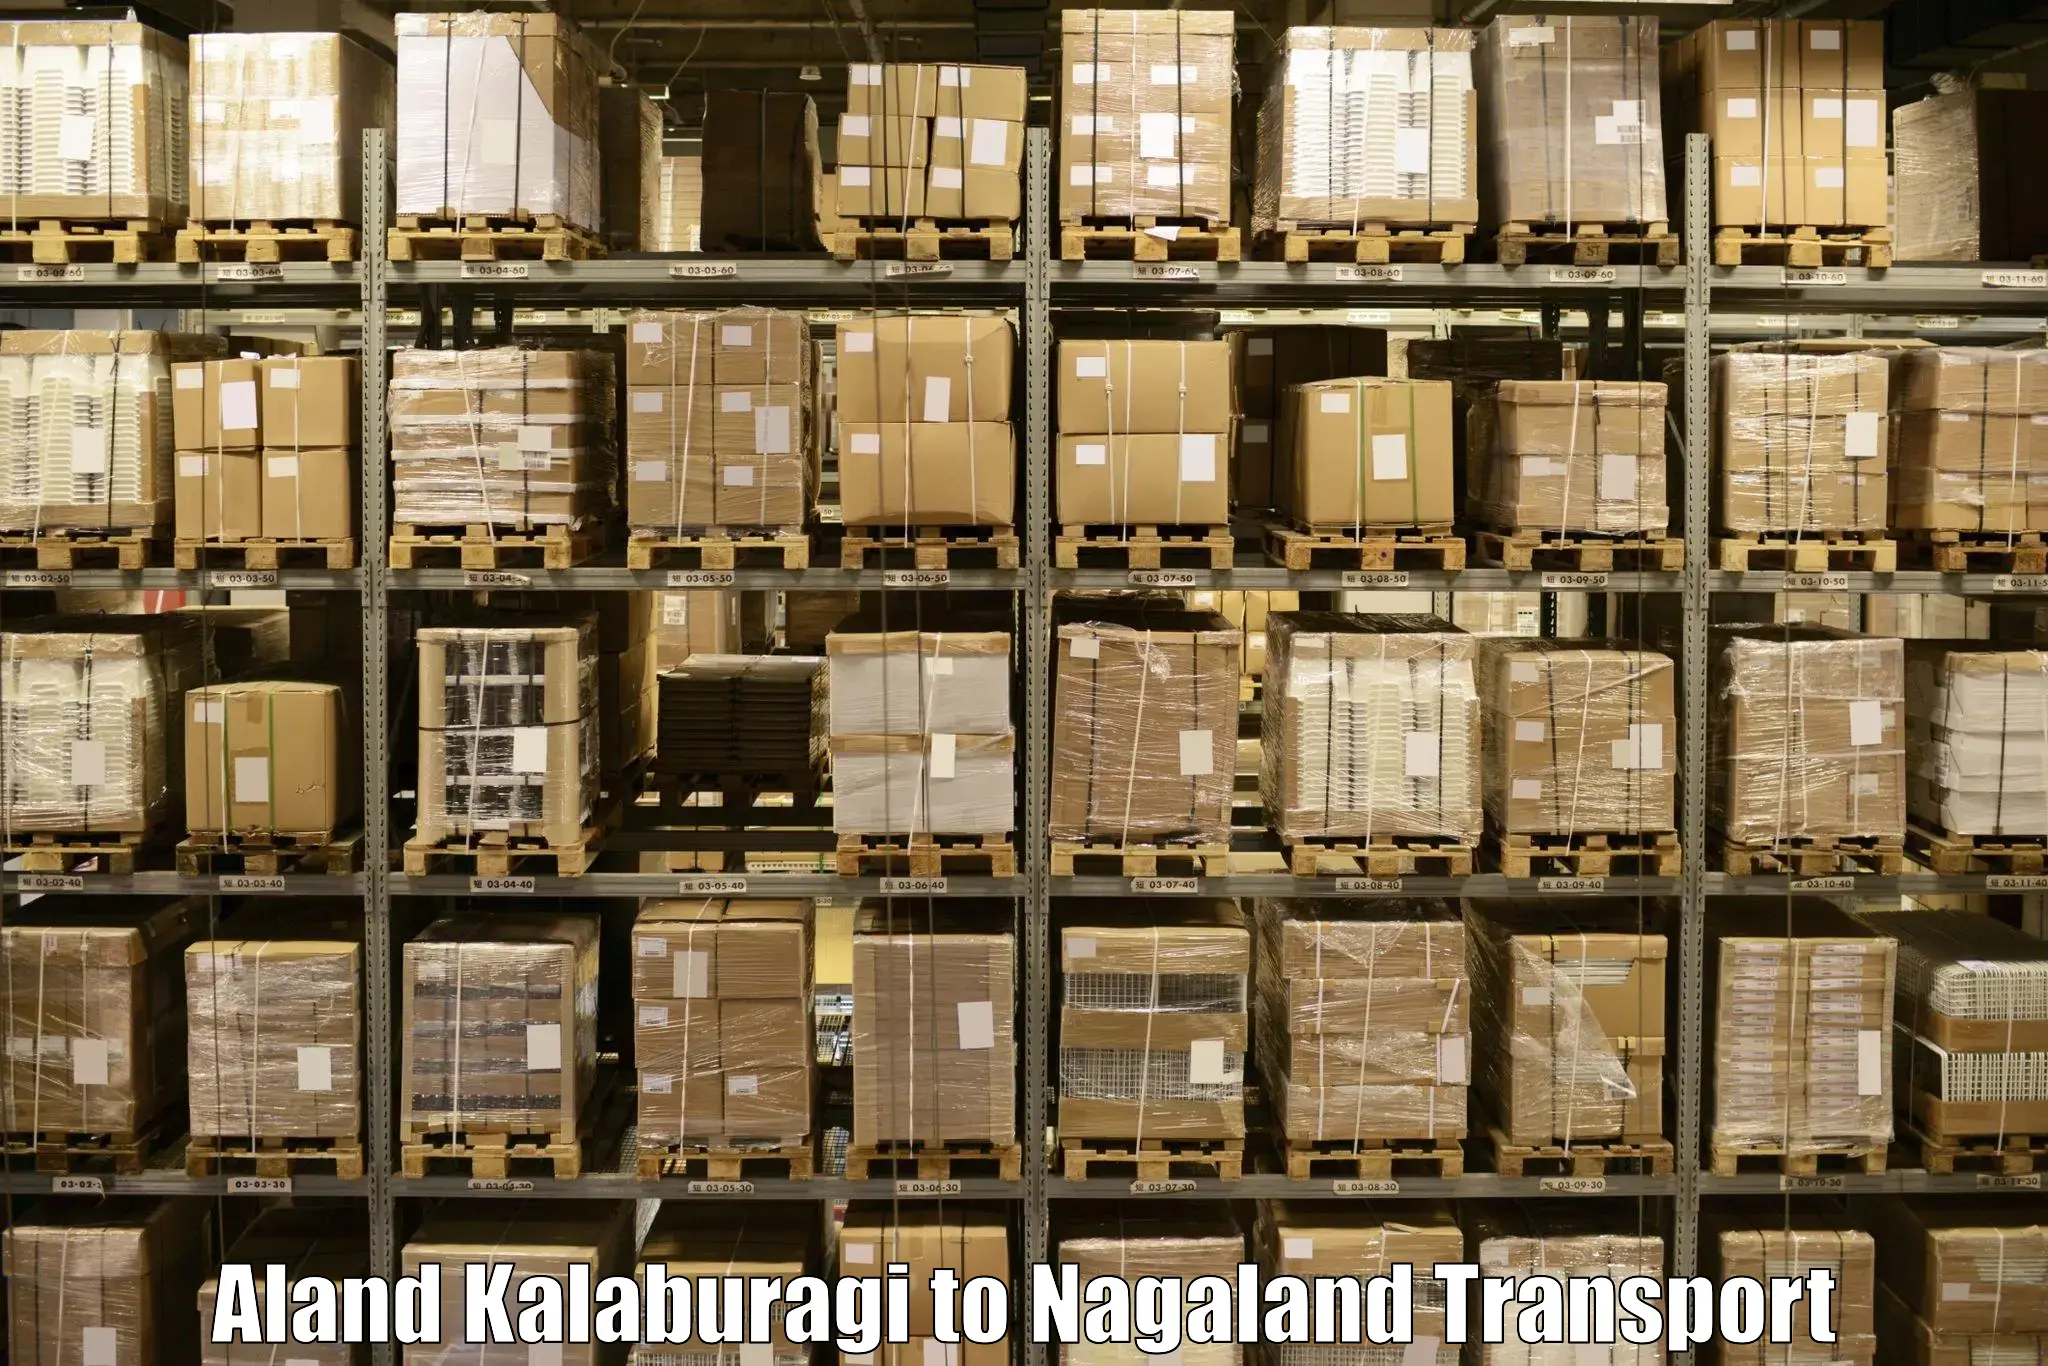 India truck logistics services Aland Kalaburagi to NIT Nagaland